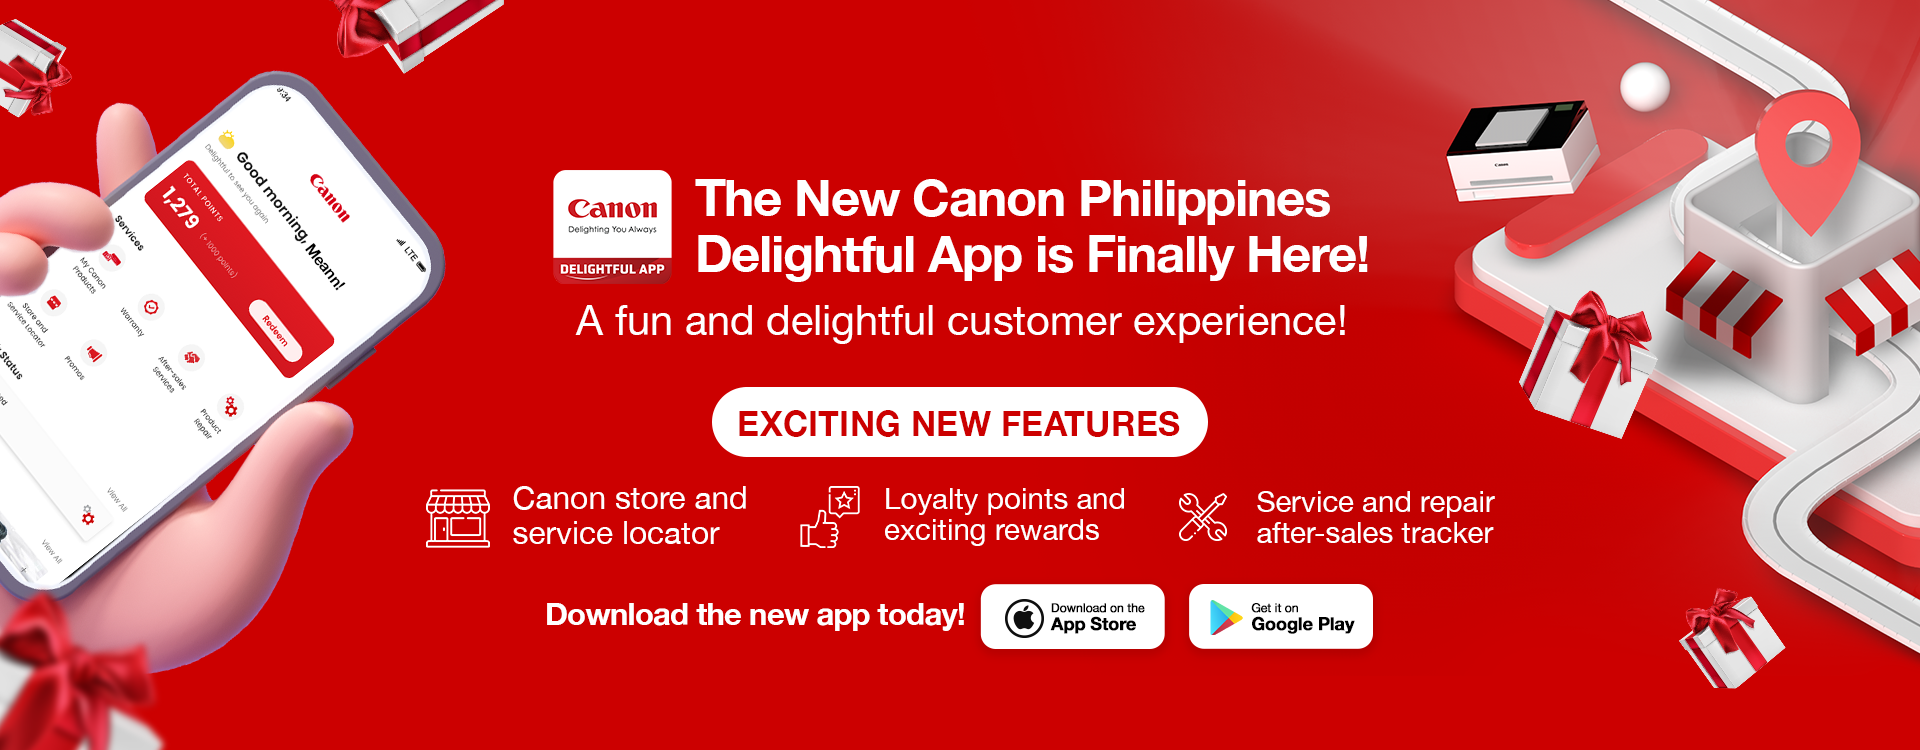 Canon Delightful App Website.png